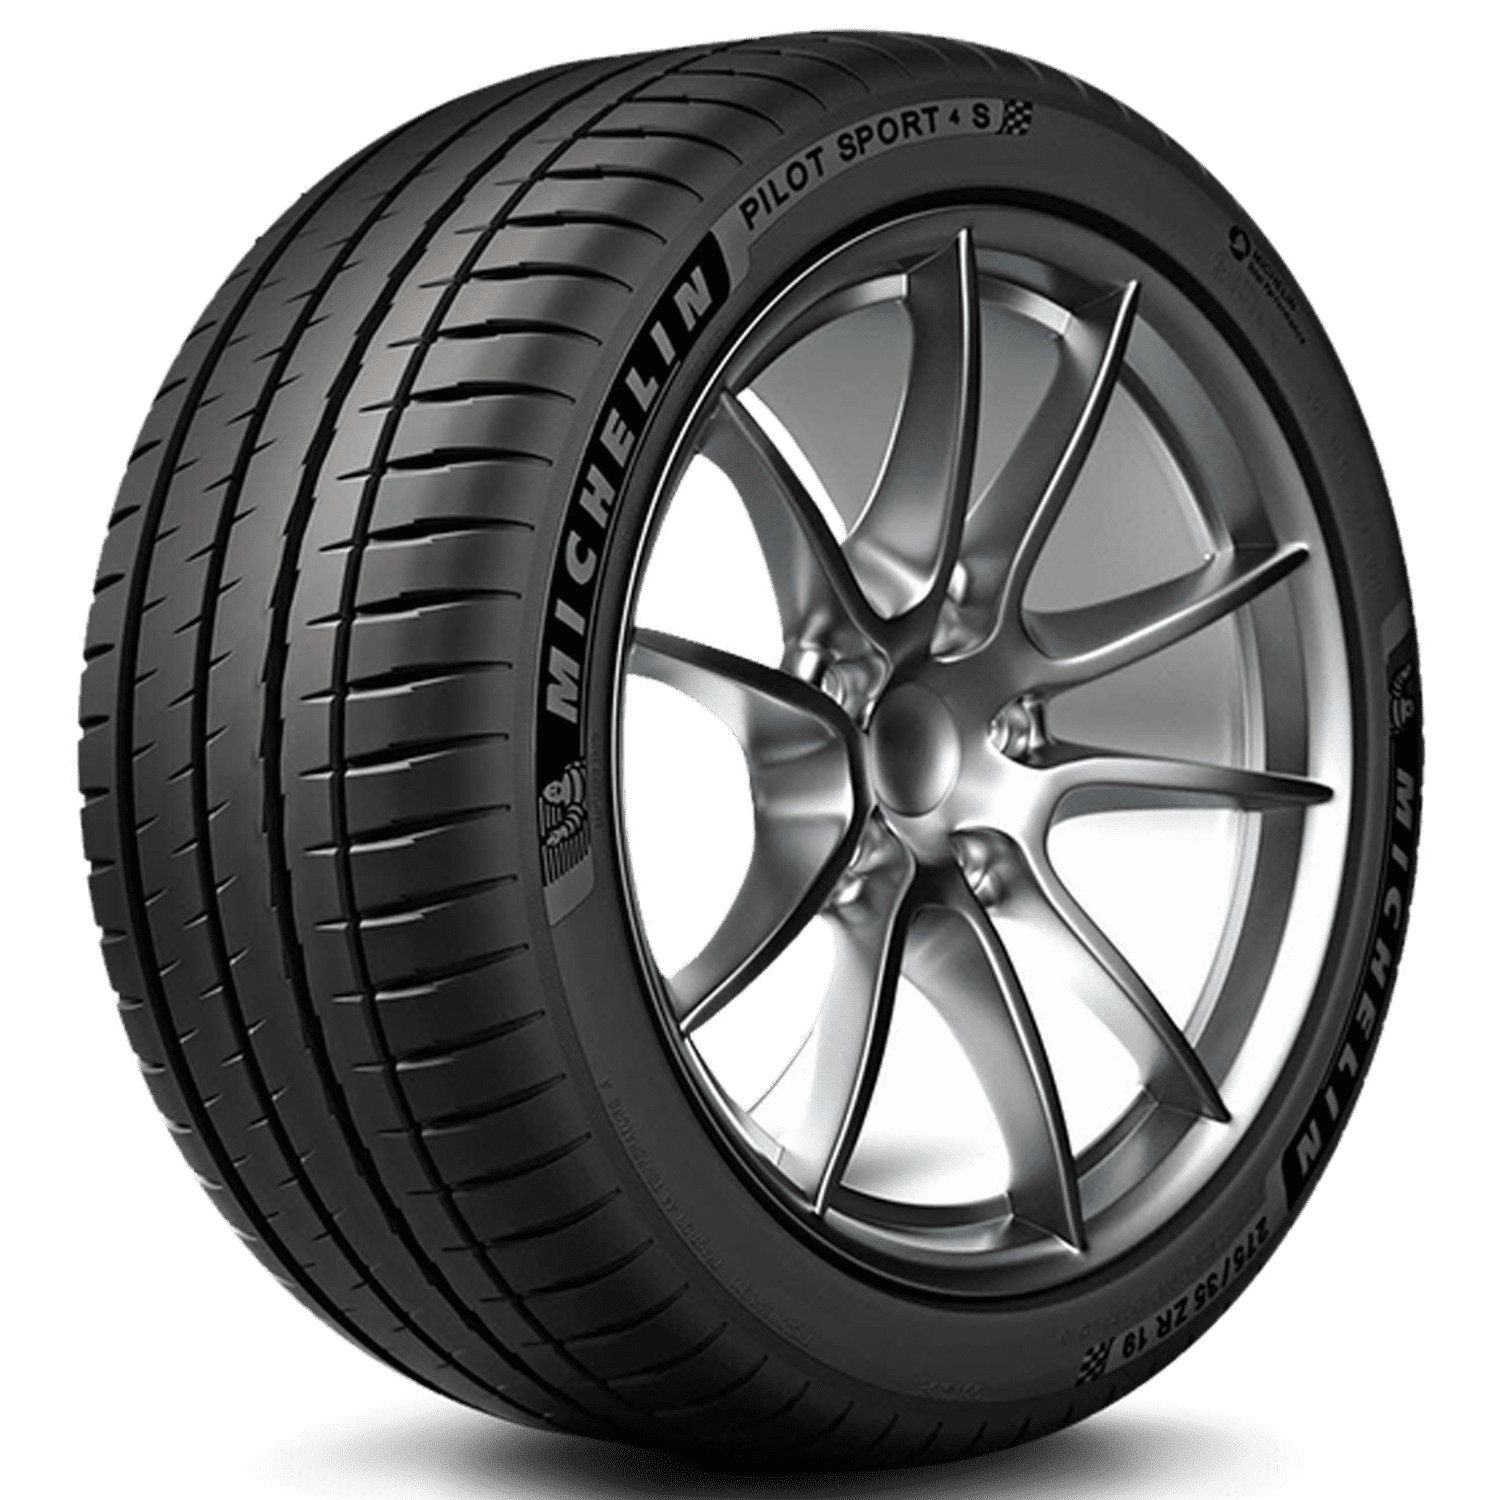 Michelin Y Tire Pilot S 4 Sport 94 225/45-17